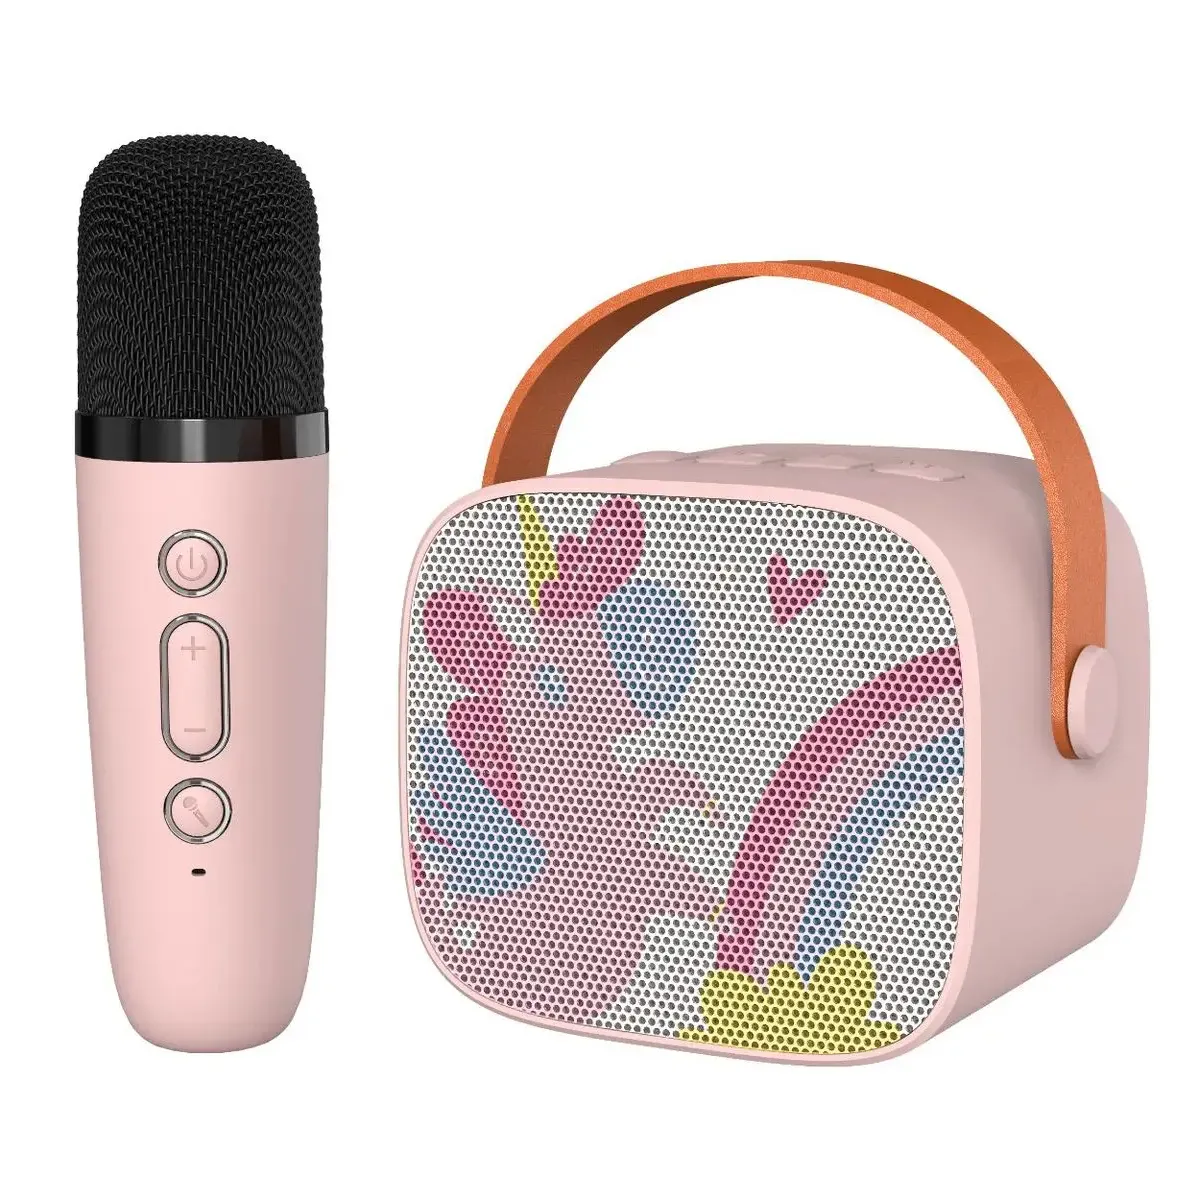 Oem sevimli çocuklar Karaoke makinesi pembe bir mikrofon ve çeşitli fonksiyonları ile çocuklar kızlar için pembe